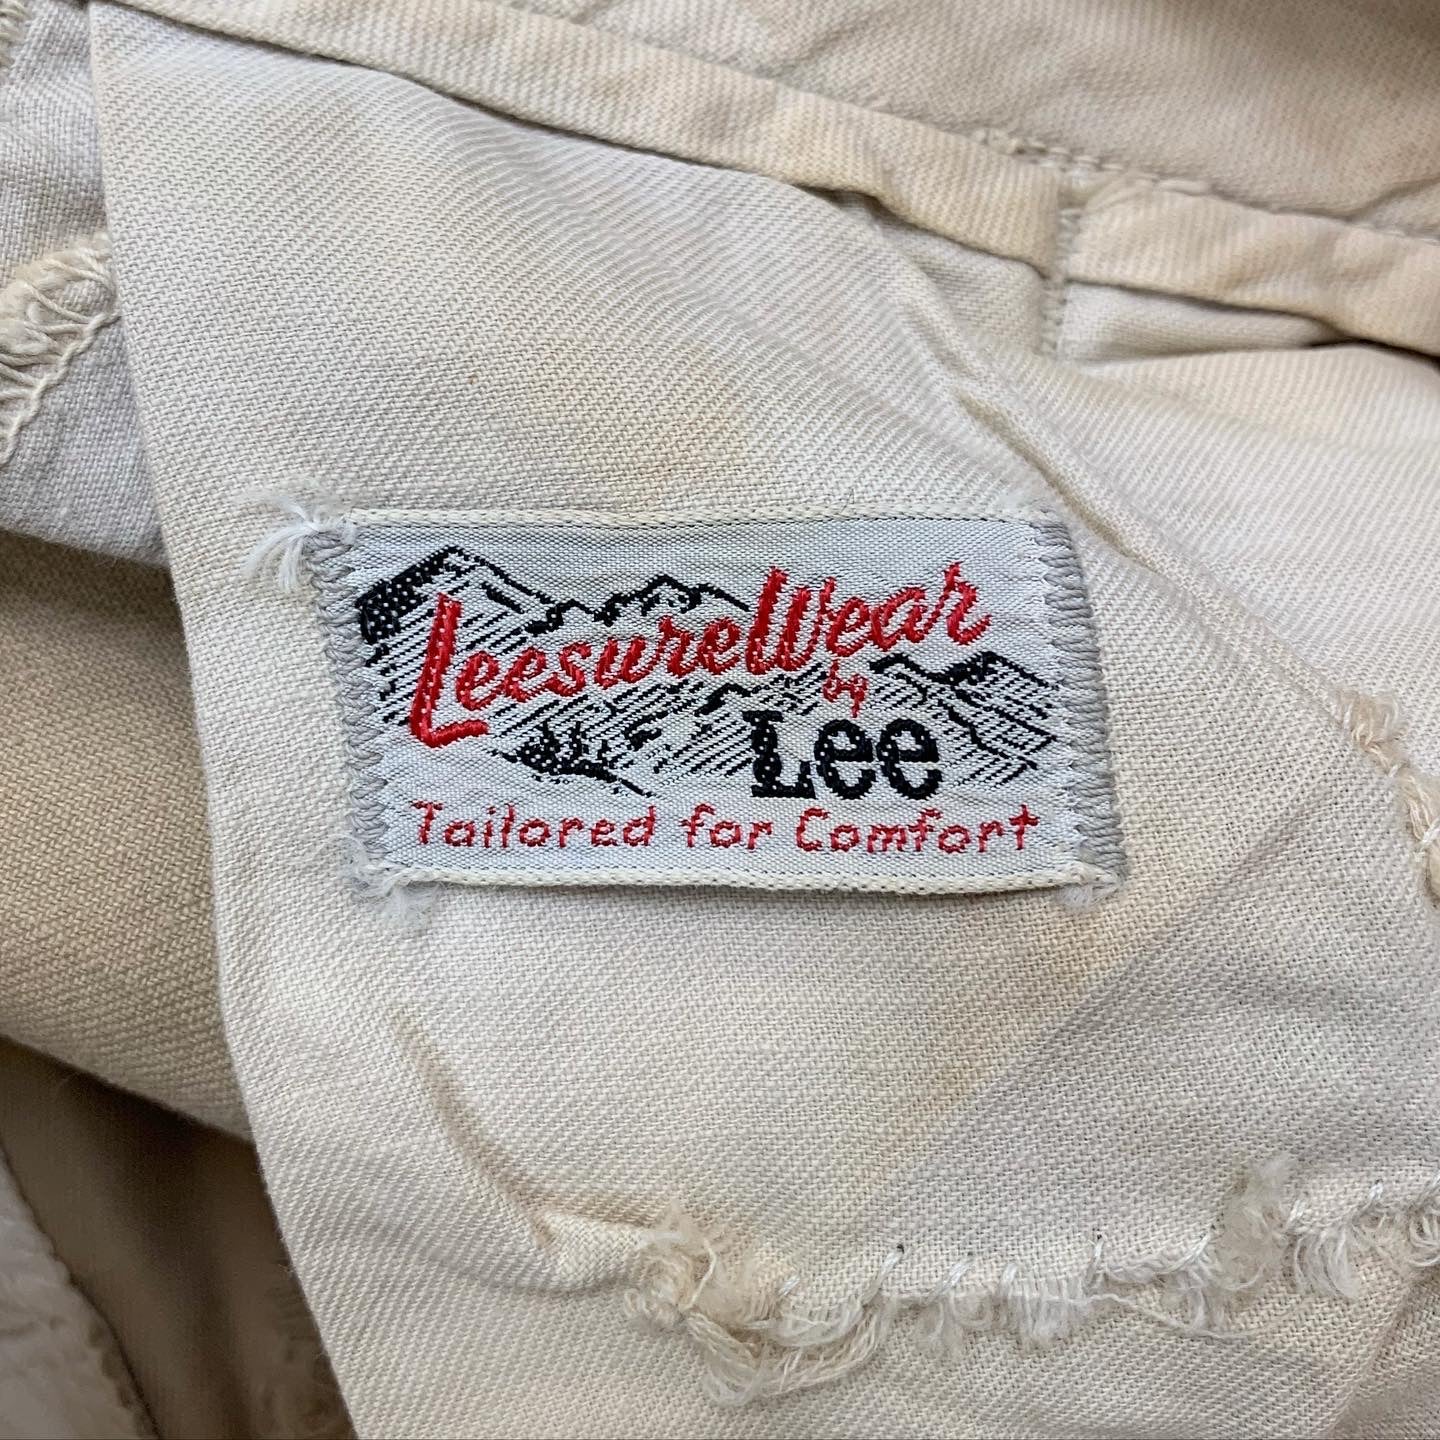 Vintage ‘60s Lee ‘Leesurewear’ Buckle-back Repaired Chinos - Dark Khaki - 28x28